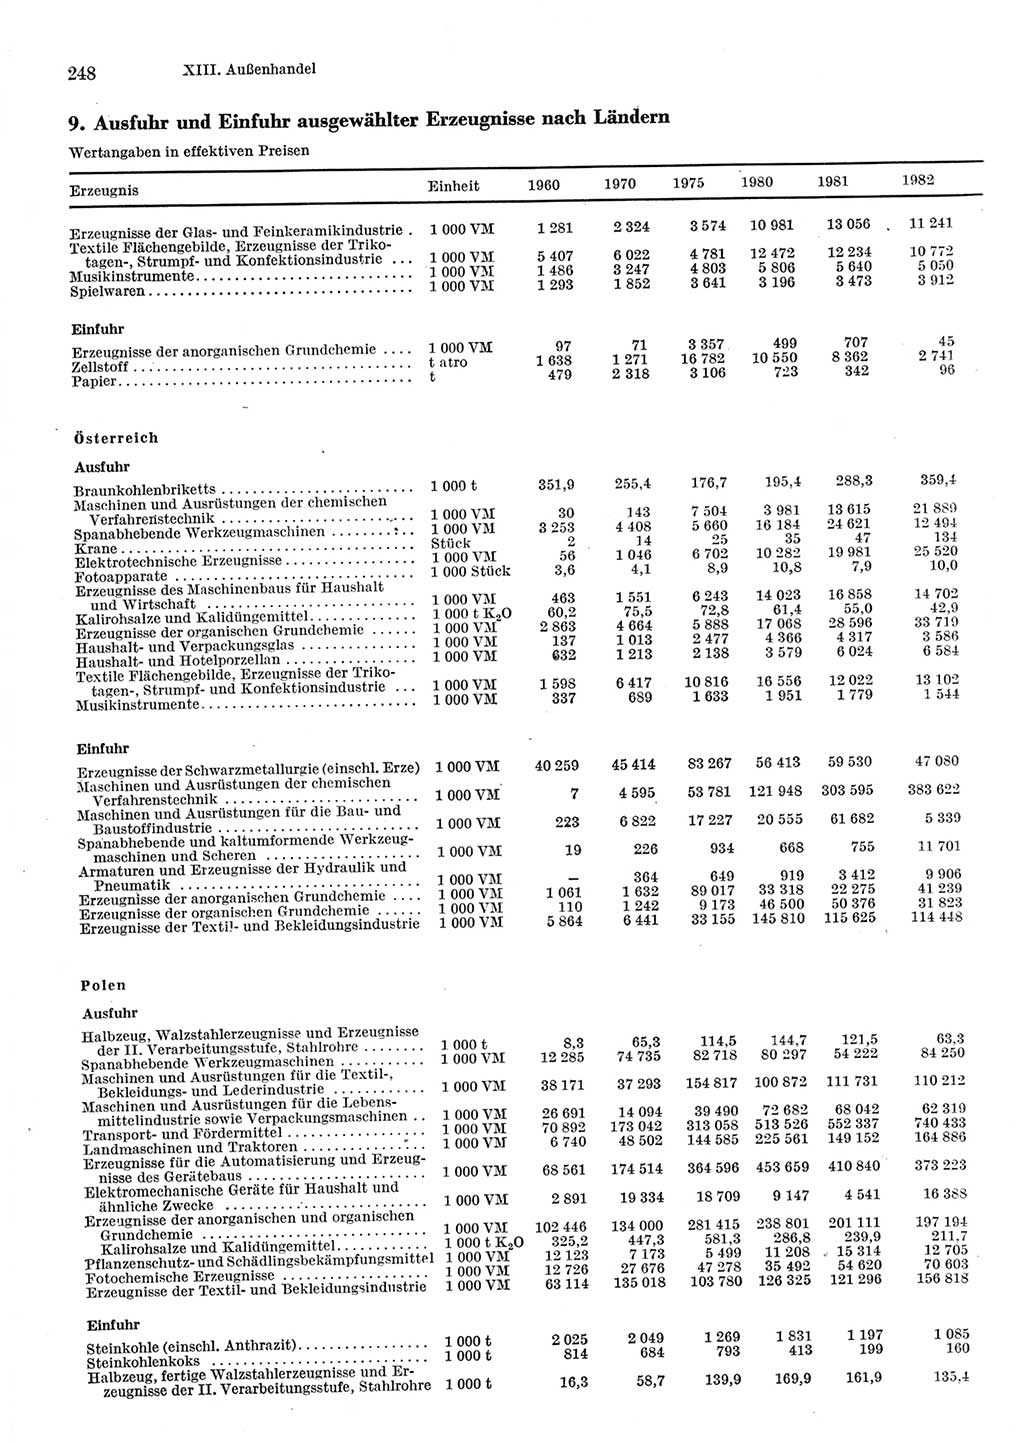 Statistisches Jahrbuch der Deutschen Demokratischen Republik (DDR) 1983, Seite 248 (Stat. Jb. DDR 1983, S. 248)